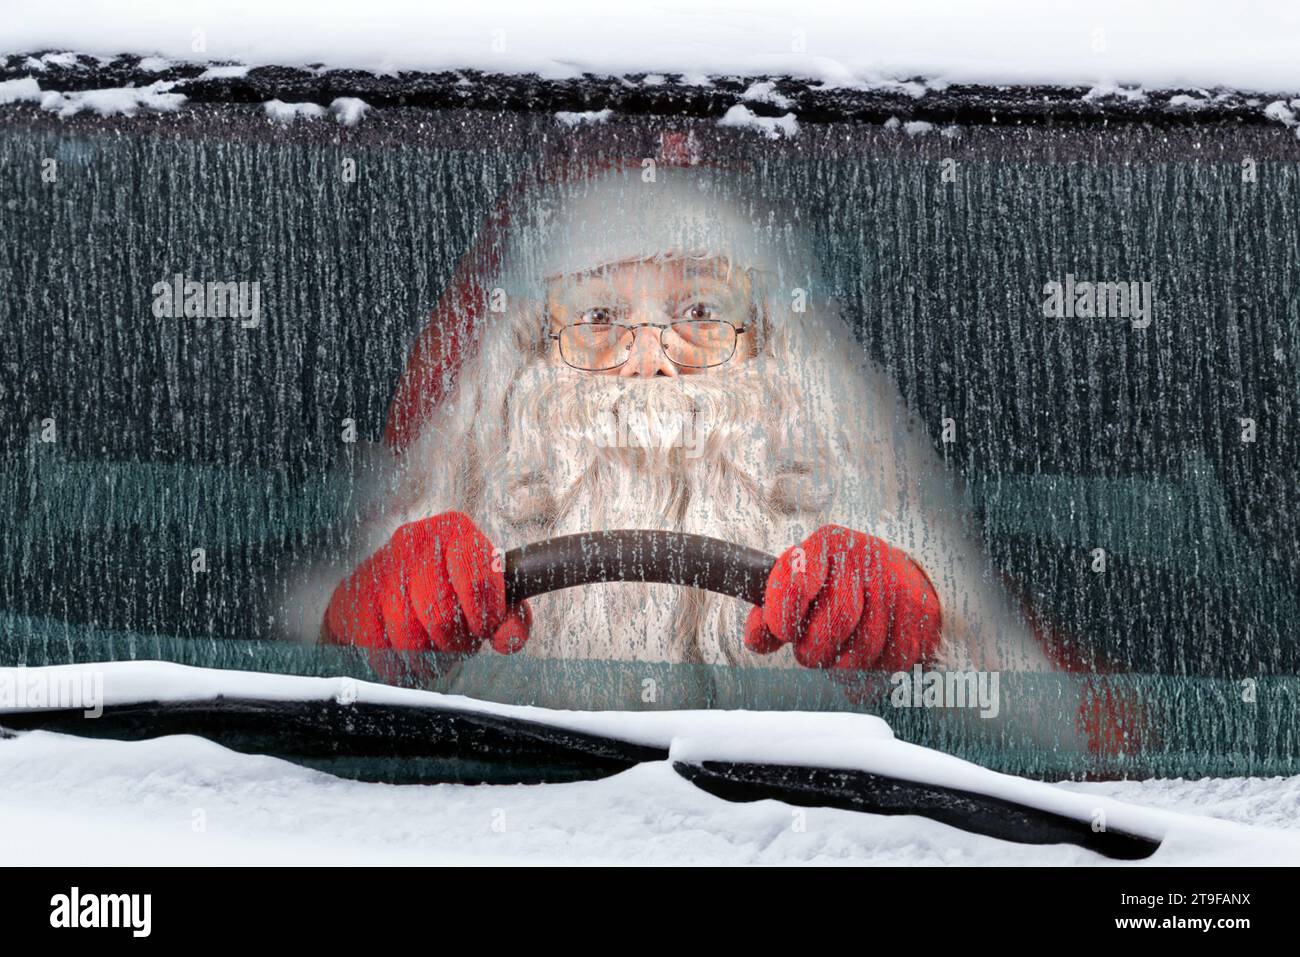 Santa Claus drives a snowy car Stock Photo